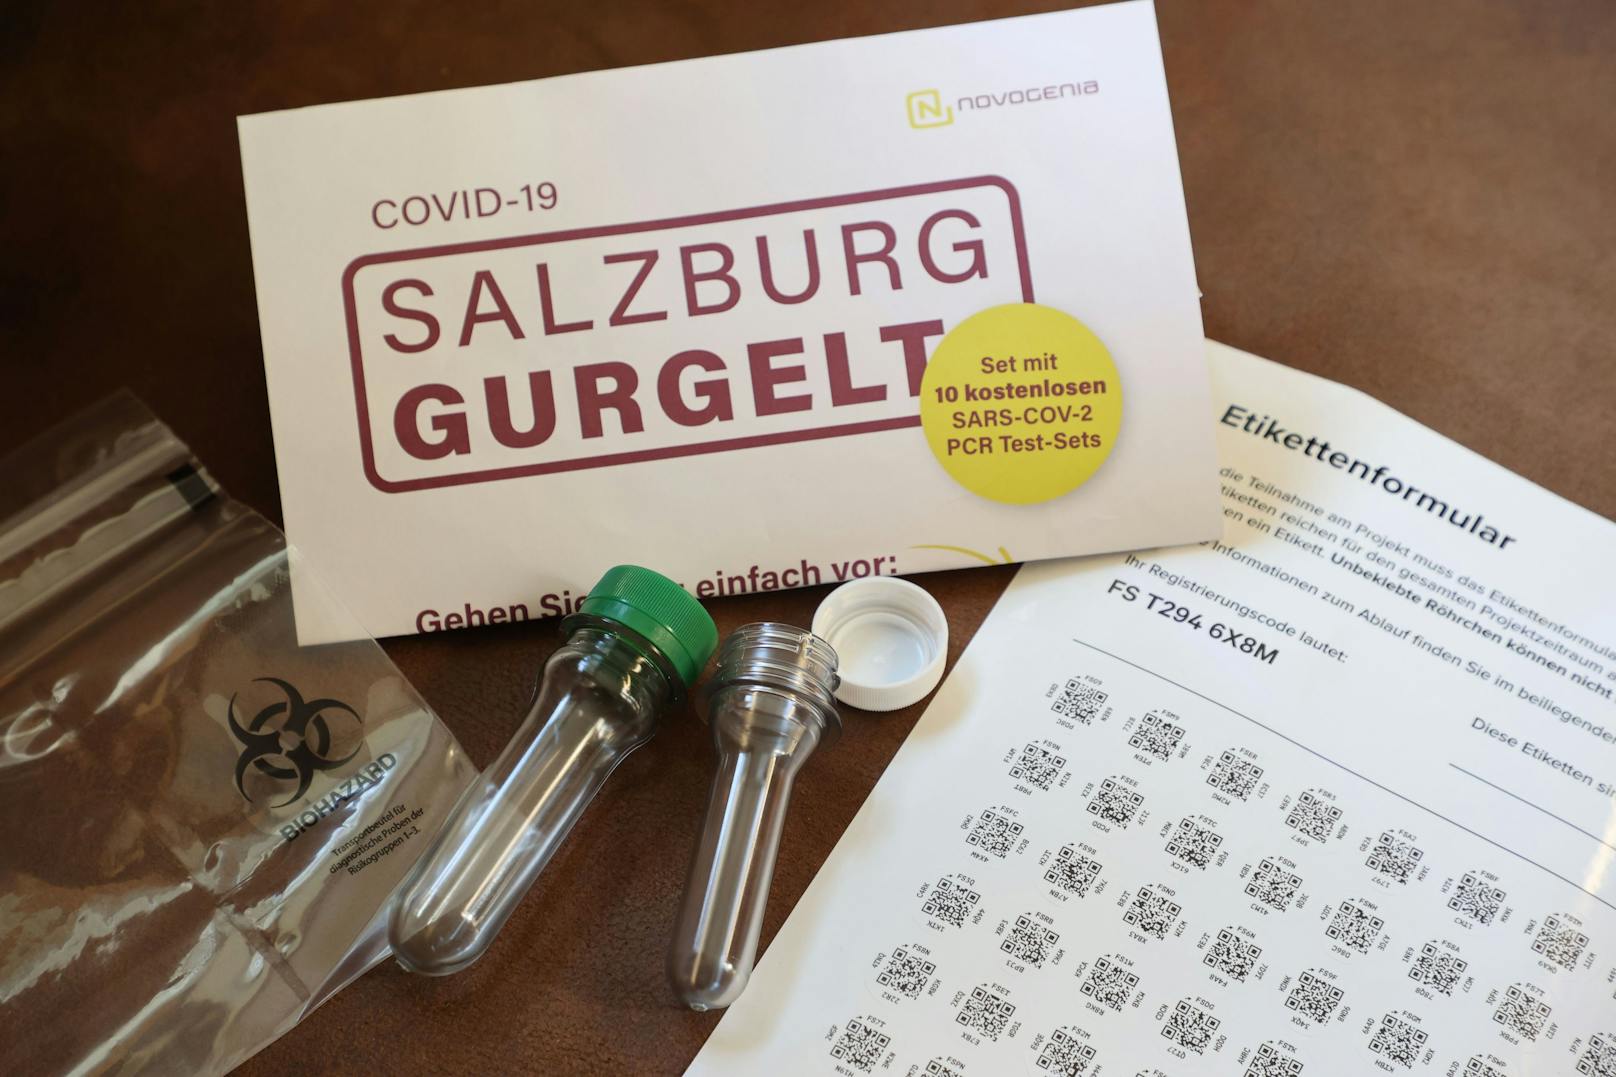 Das sorgte für Verzögerungen bei den Auswertungen von "Salzburg gurgelt"-PCR-Tests.